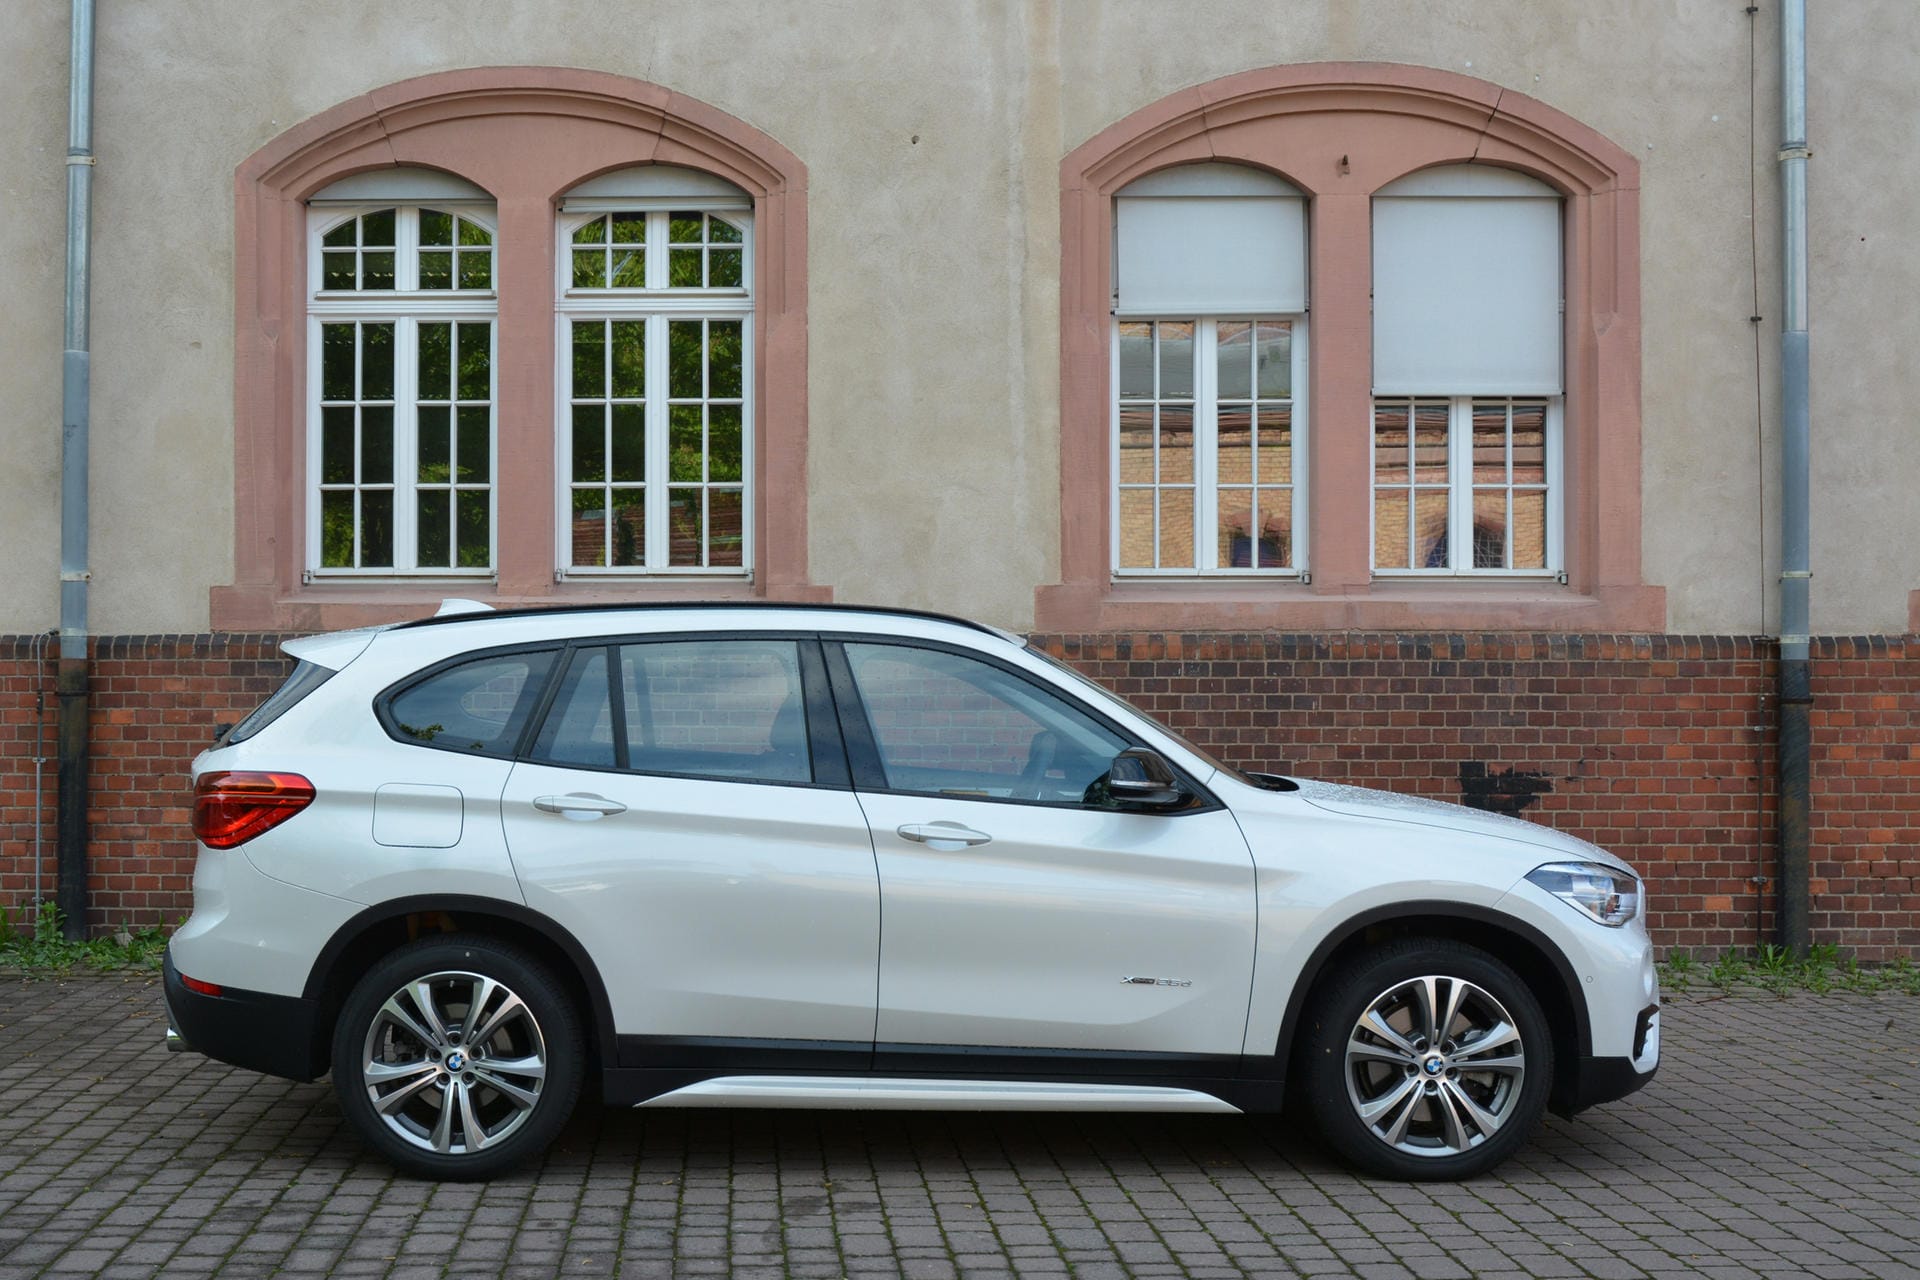 Über eine Länge von 4,44 Meter streckt sich der BMW X1 - damit ist er 22 Zentimeter kürzer als der nächstgrößere X3.